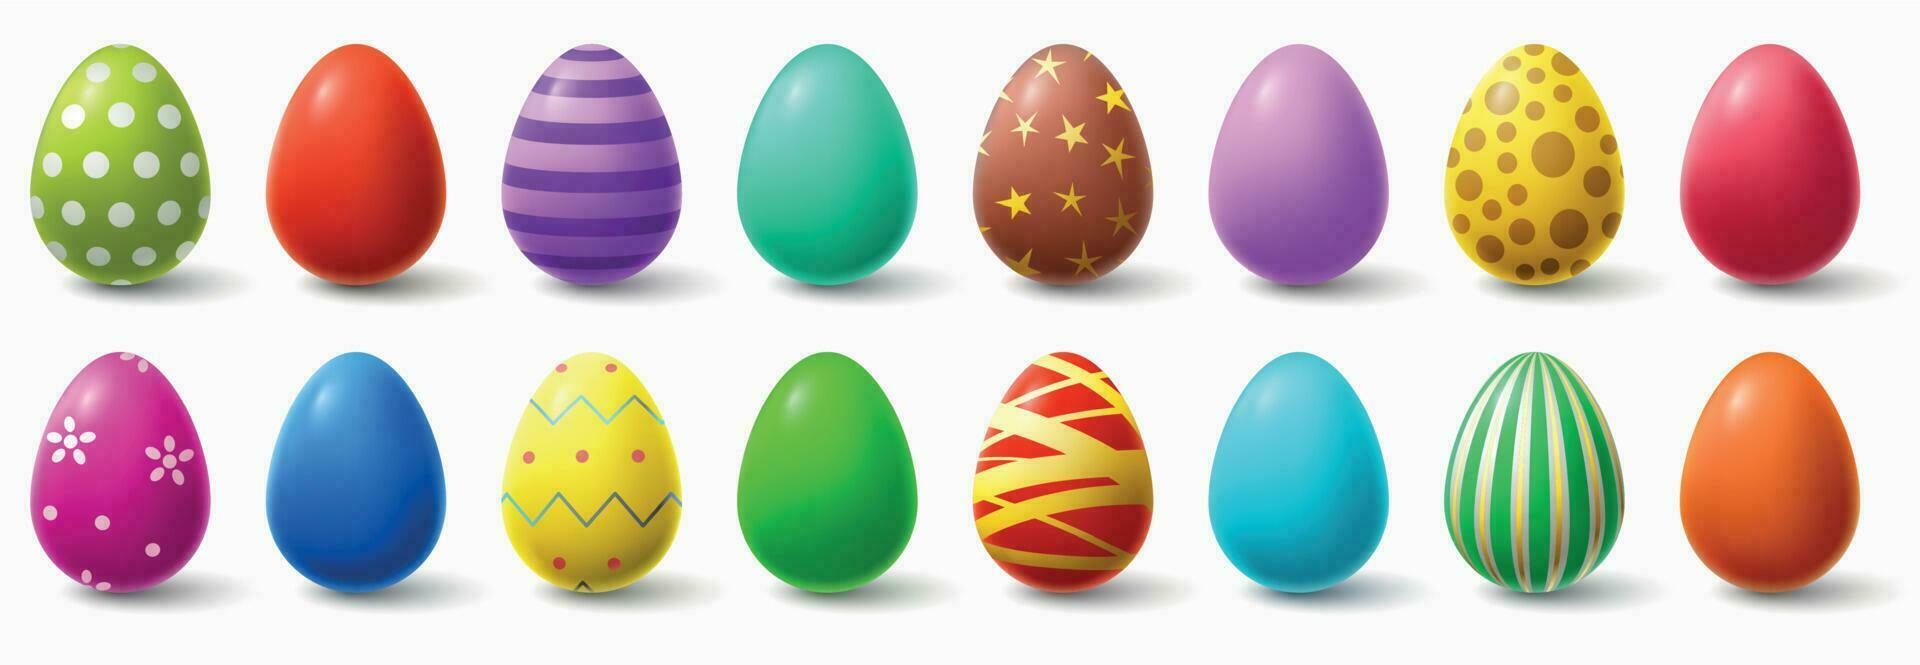 vistoso Pascua de Resurrección huevos. fiesta pollo huevo decoración, Pascua de Resurrección patrones realista aislado vector ilustración conjunto